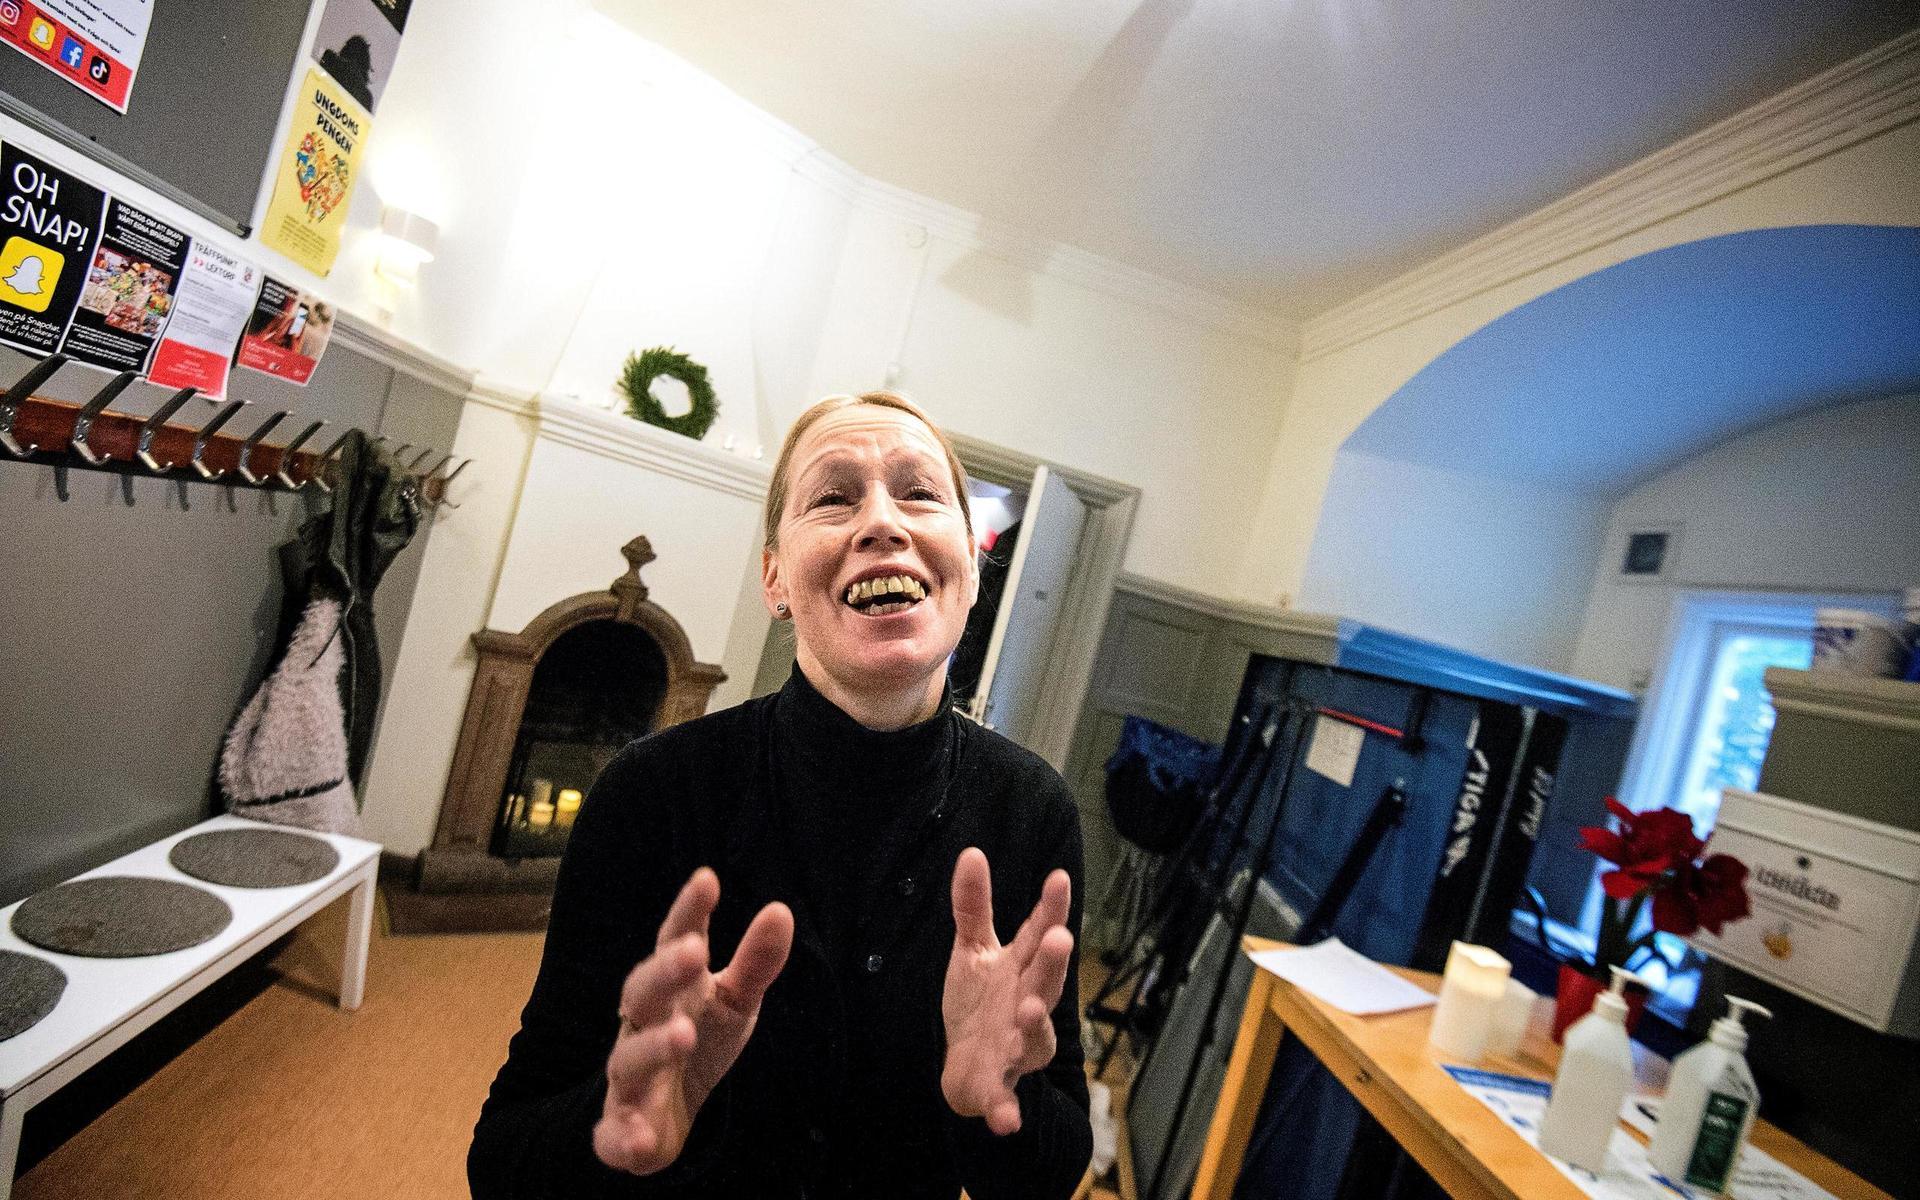 Karin Jacobsson Mauritzson har många järn i elden och förutom sitt arbete på Storegårdens fritidsgård jobbar hon även med musik och teater, vilket även tjejerna i gruppen har fått prova på. Här är hon utrustad med en uppsättning löständer för teatersammanhang.